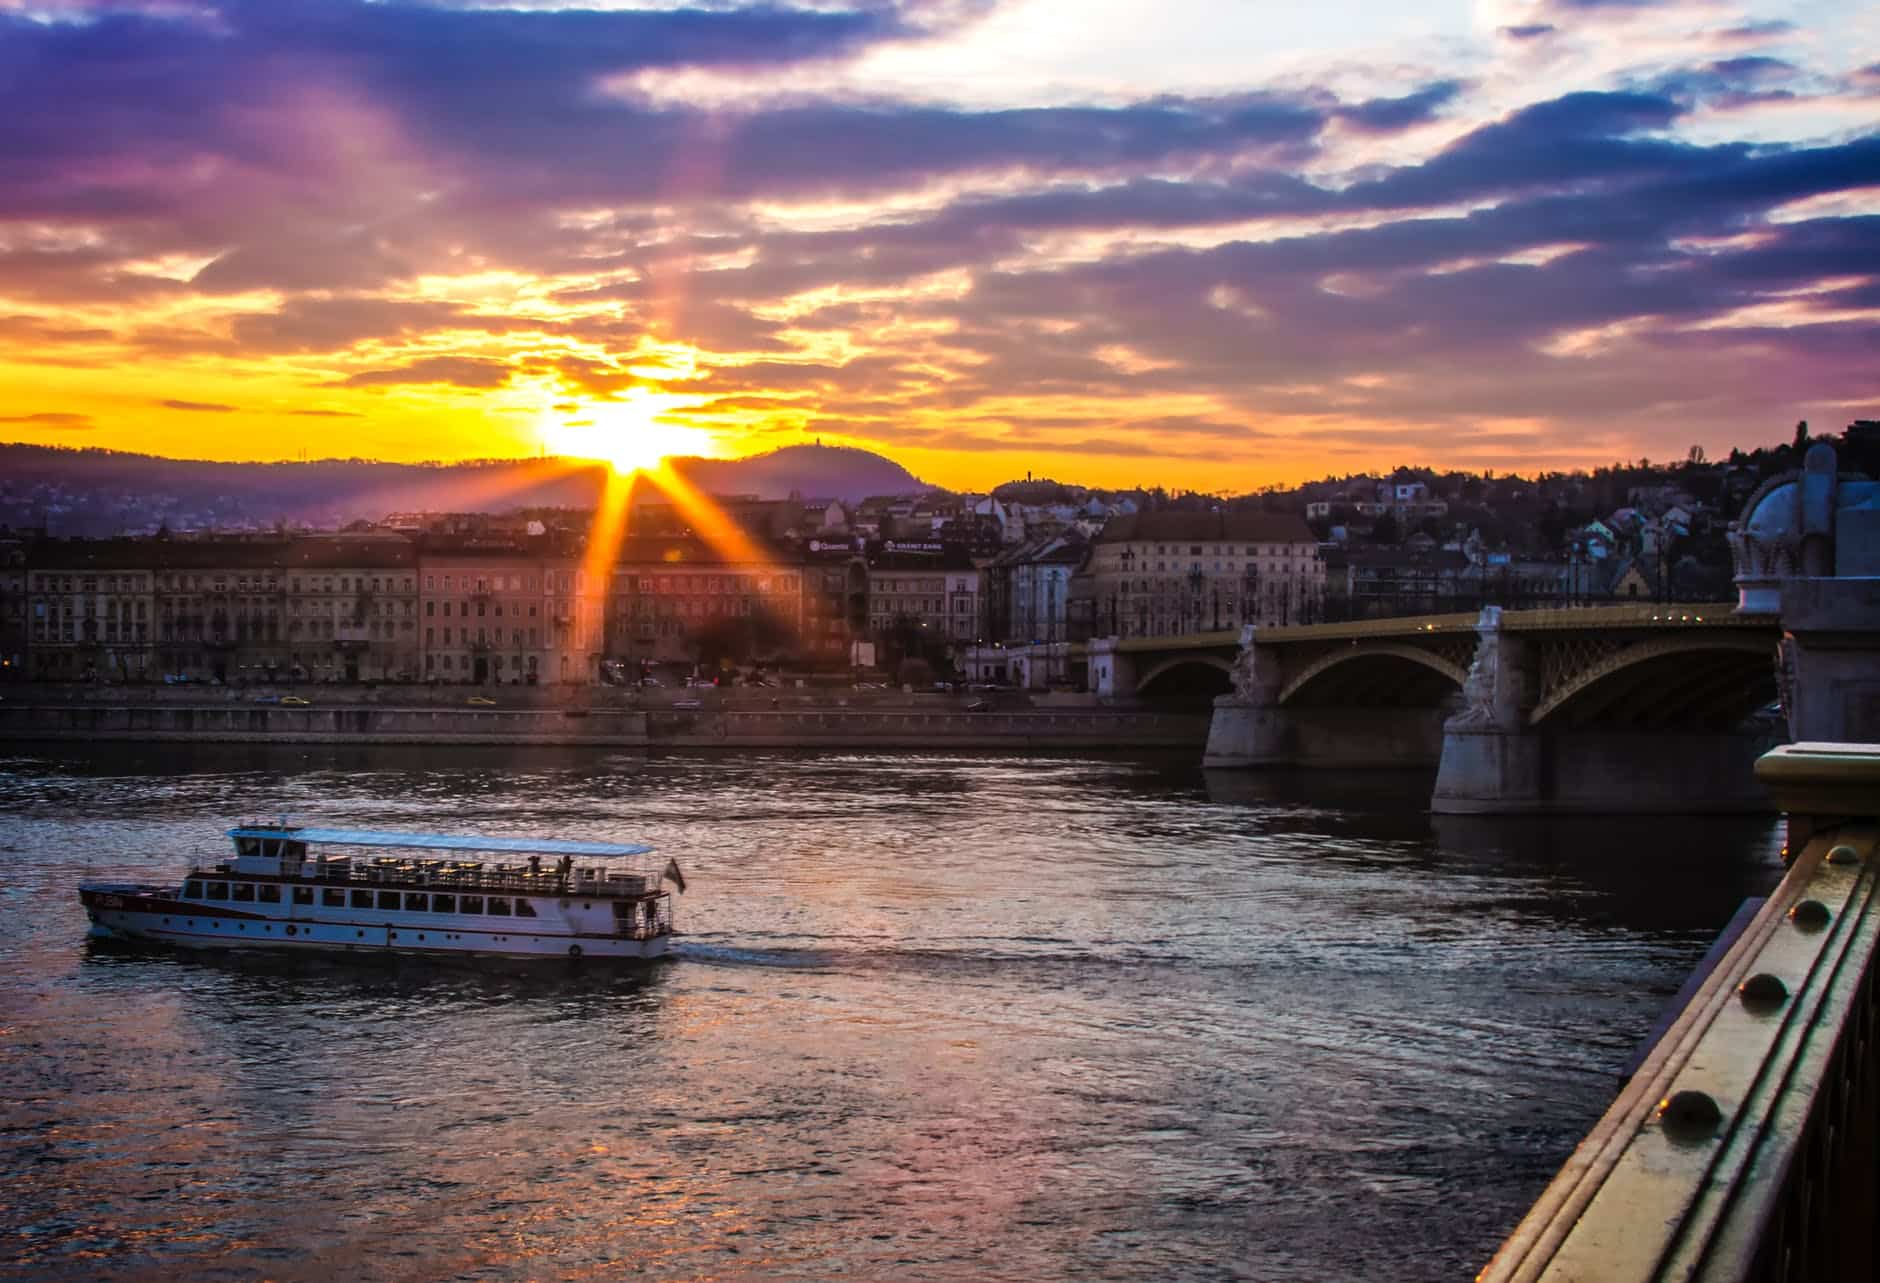 Günstiger Urlaub in Ungarn Von der atemberaubenden Donau, dem wunderschönen Plattensee bis zu den sanften Hügeln hat Ungarn für jeden etwas zu bieten.